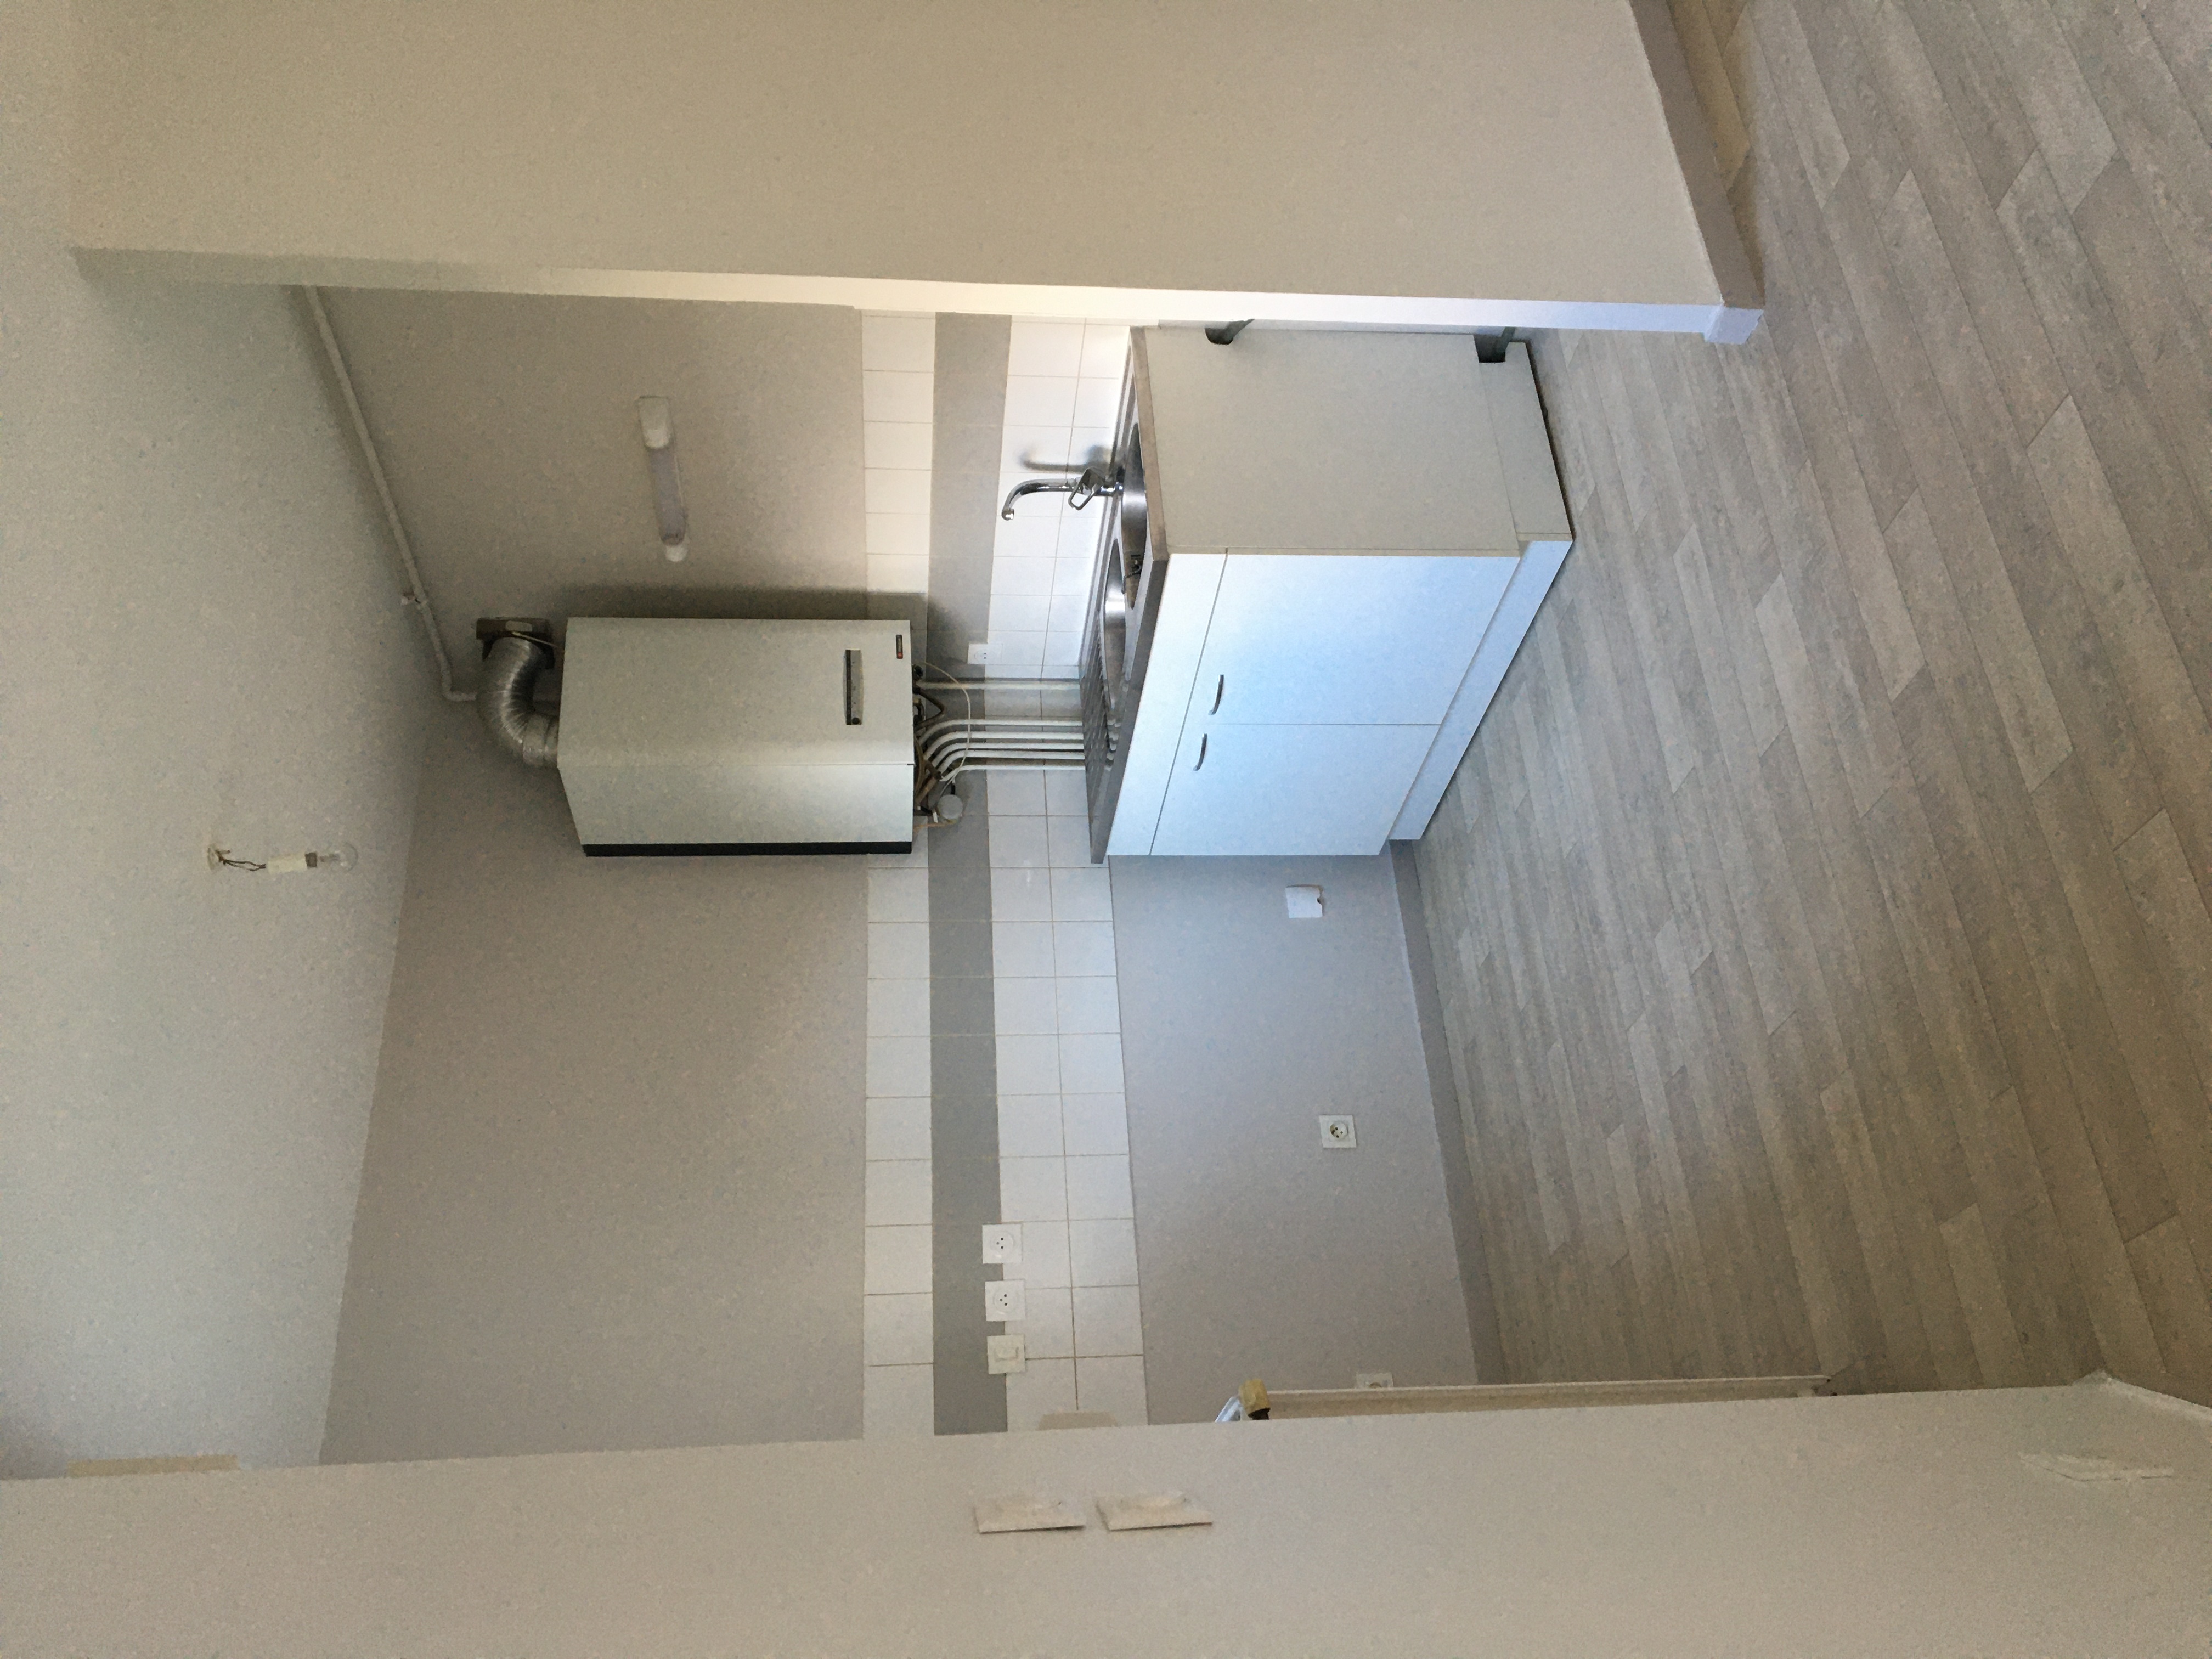  Appartement type 1  32 m  Secteur Centre